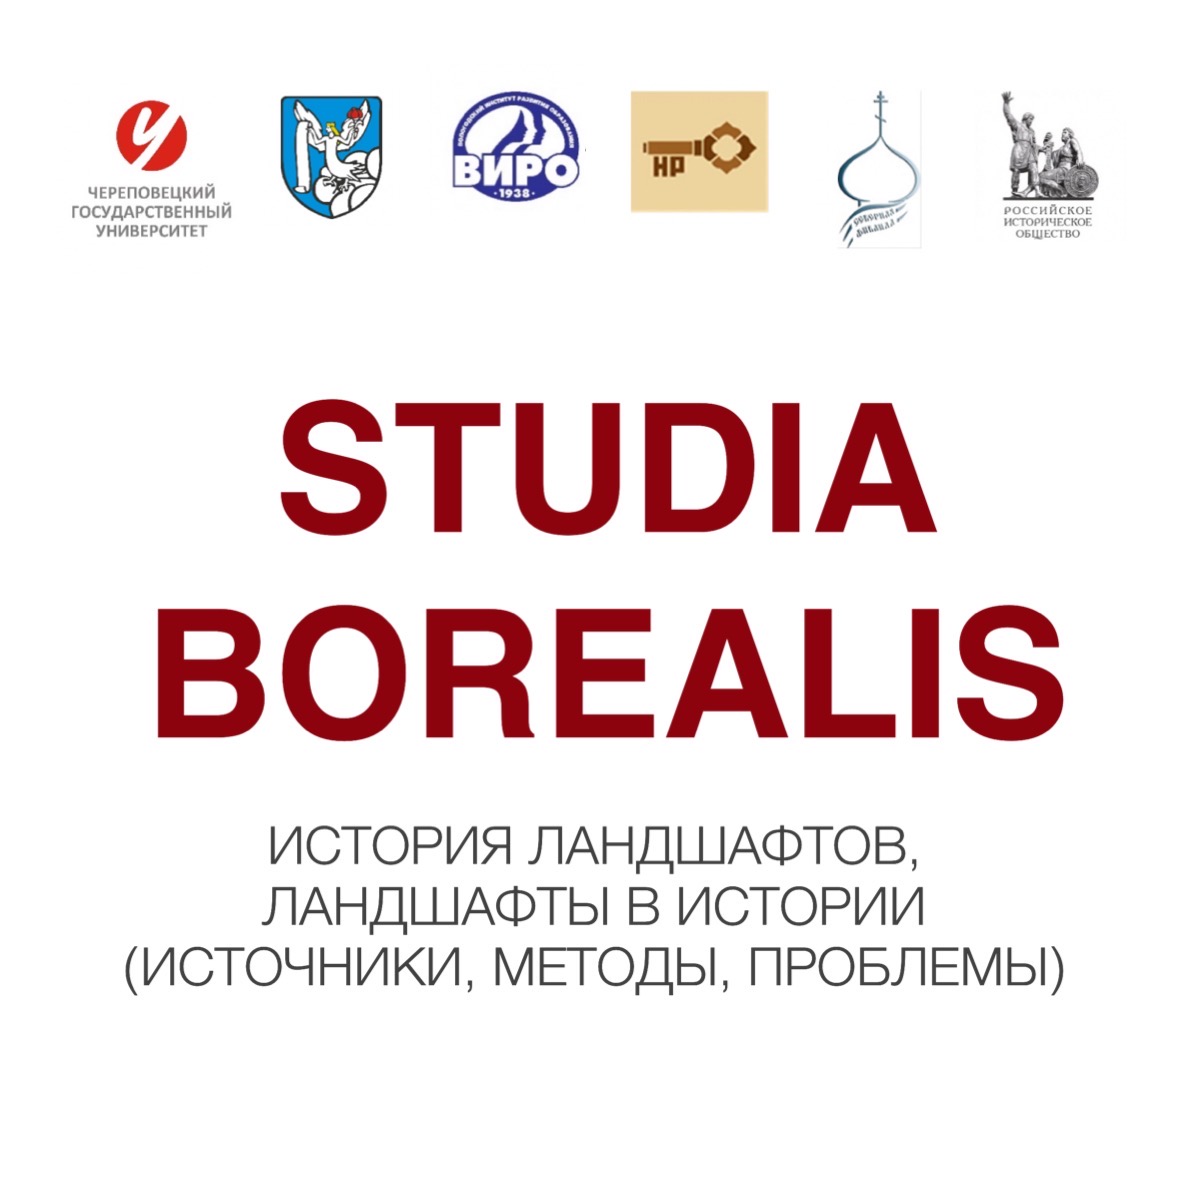 Представители исторического факультета МГУ - участники конференции “Studia borealis: история ландшафтов, ландшафты в истории“